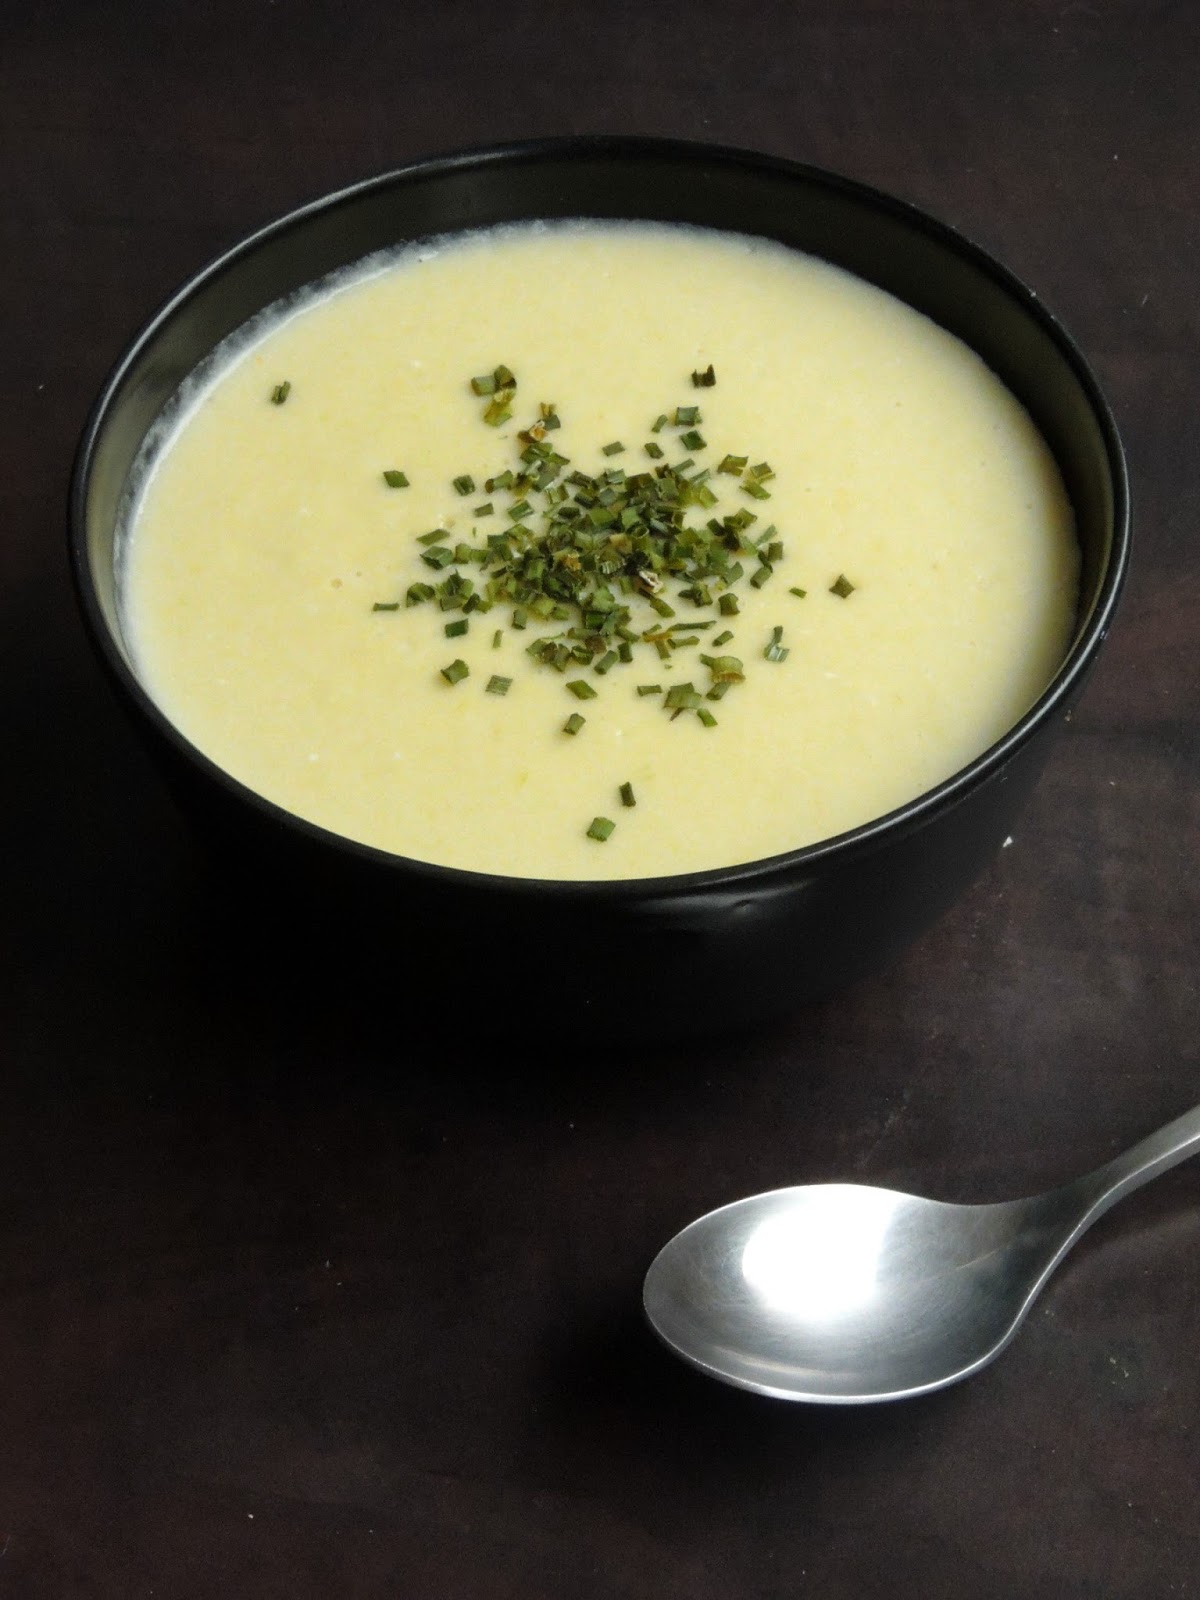 Priya's Versatile Recipes: Vichyssoise/Chilled Leek & Potato Soup